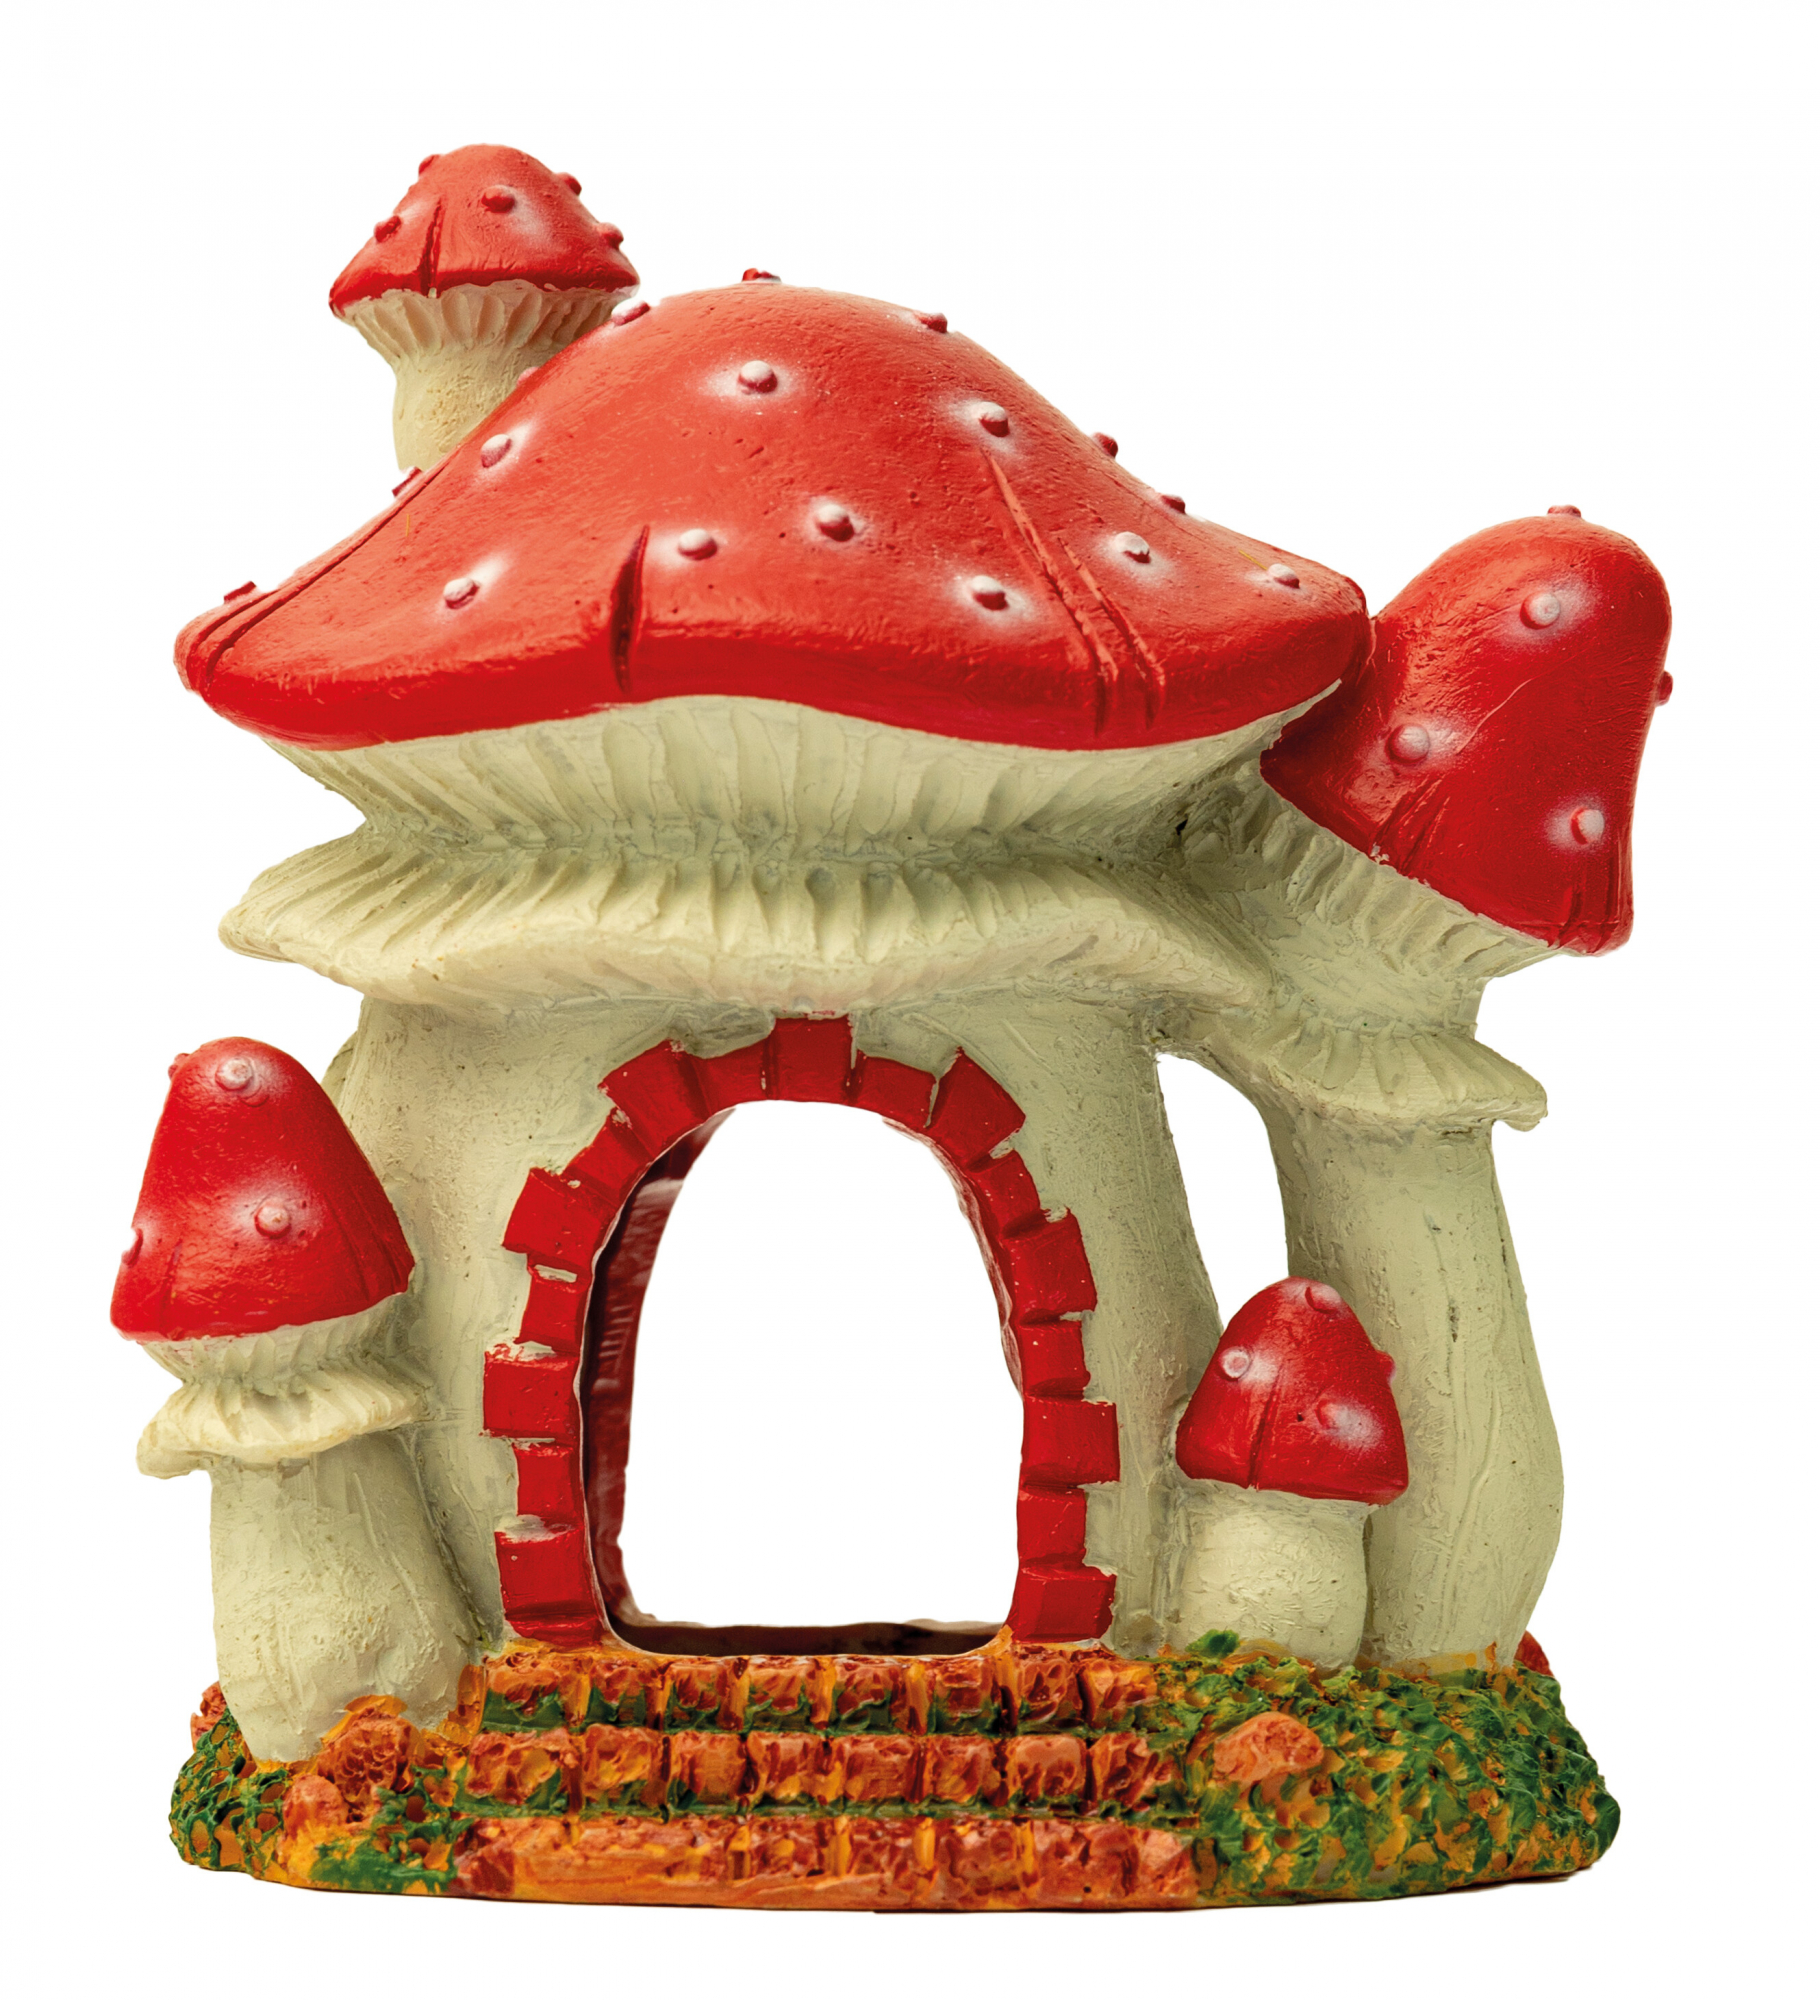 Décoration aquarium Maison-Champignon Mushroom House - 3 modèles